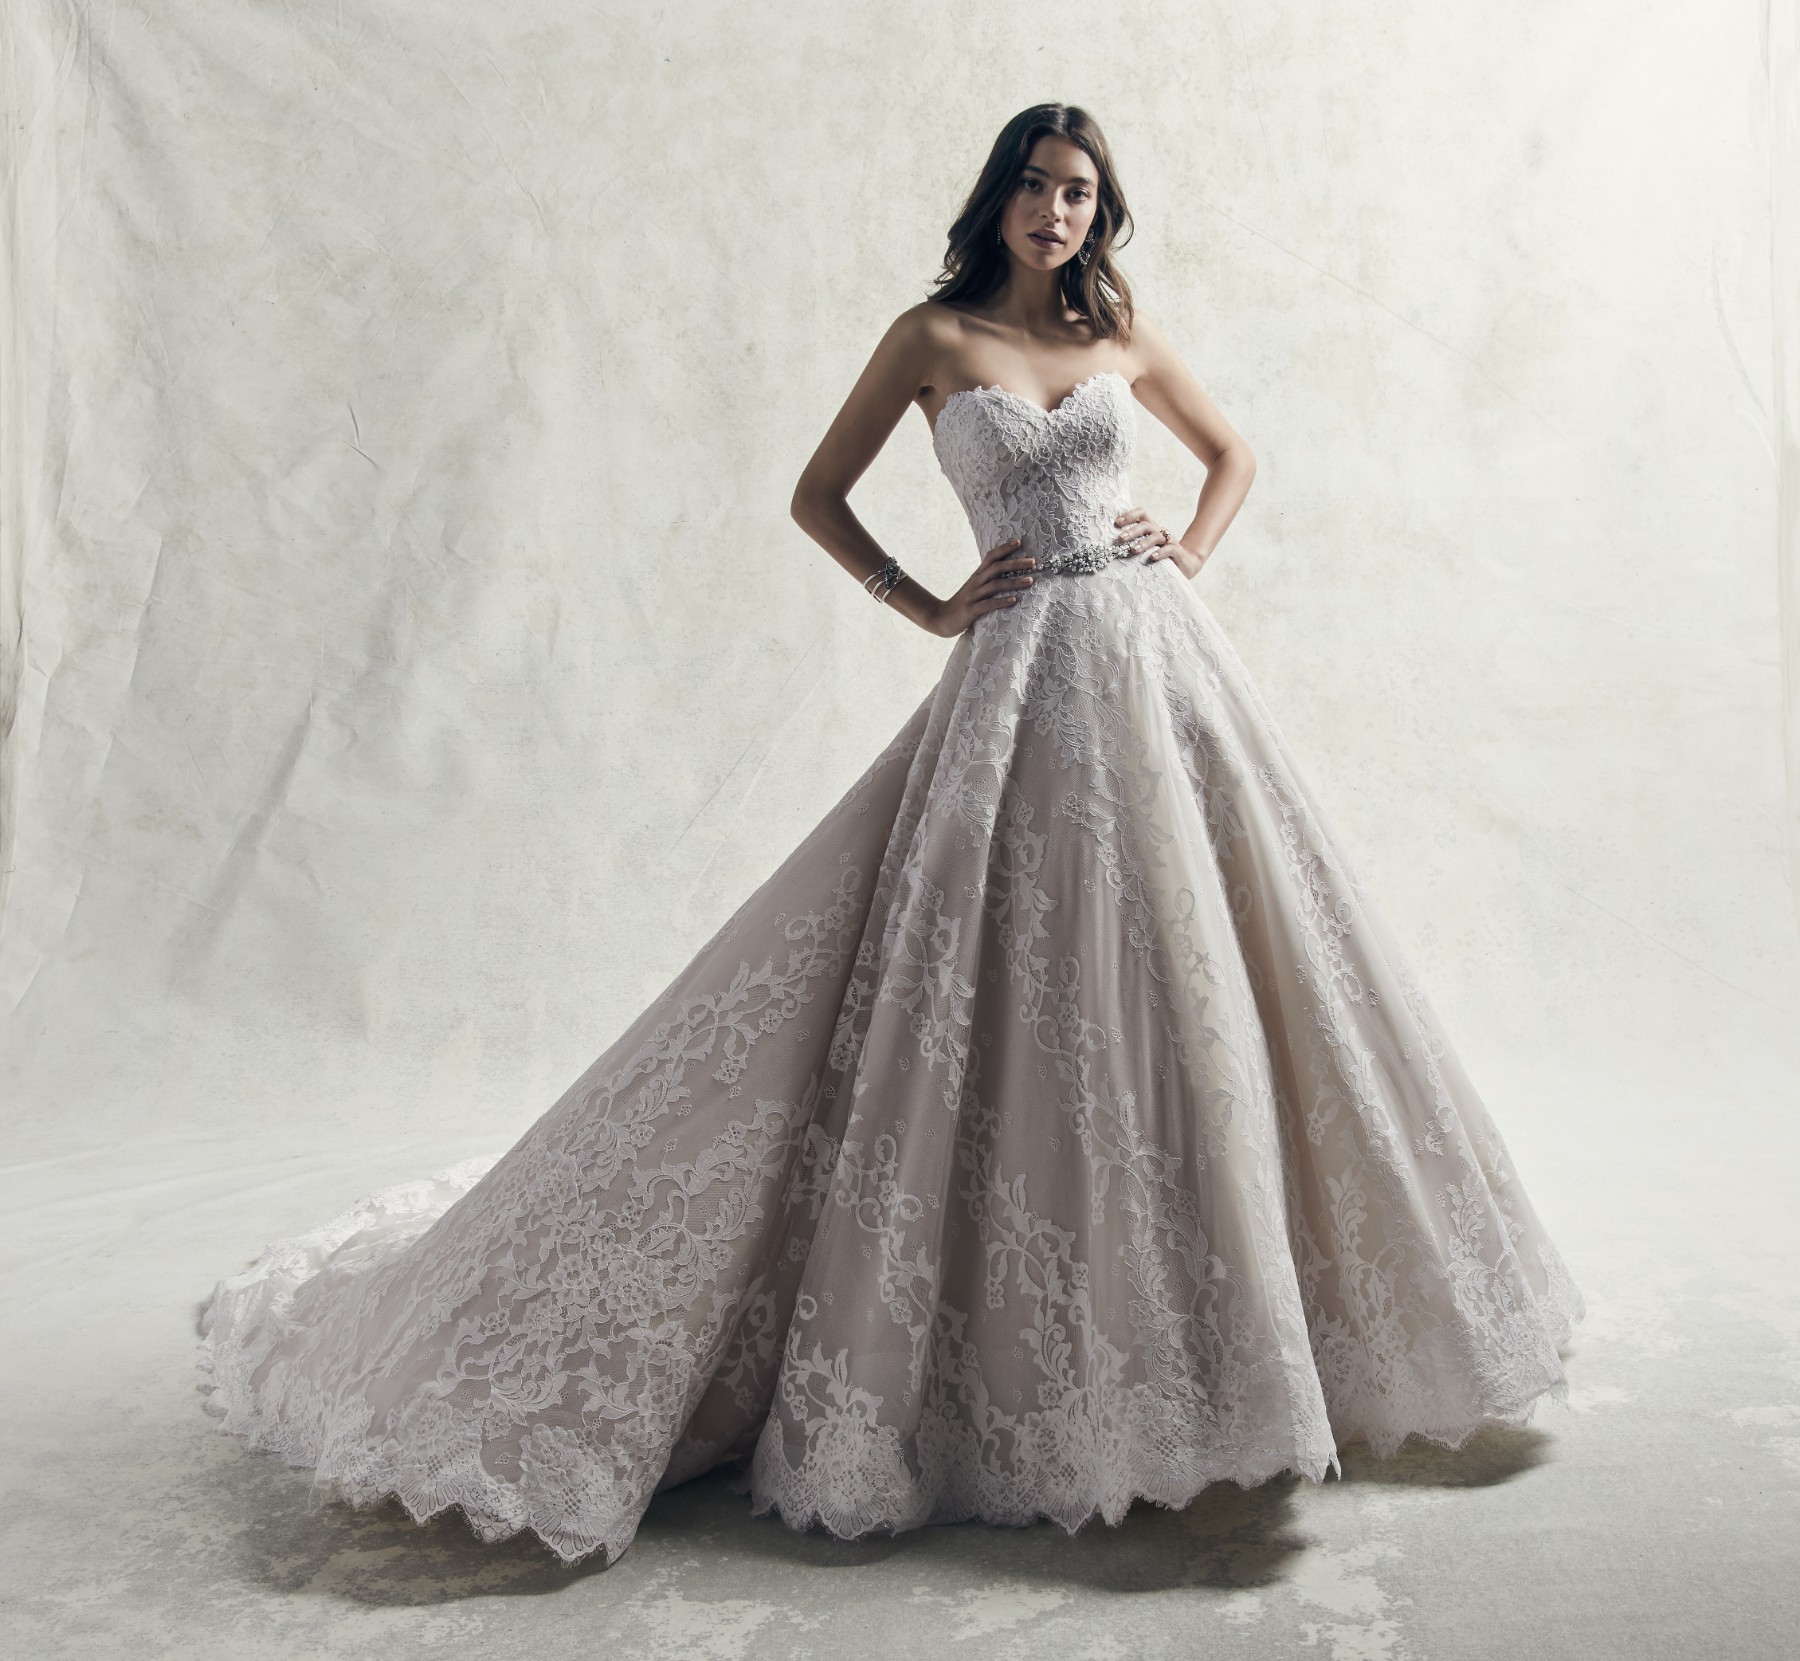 Pormenores de renda românticos dão destaque a este vestido de noiva com corte princesa. Sem alças e com decote em forma de coração. 